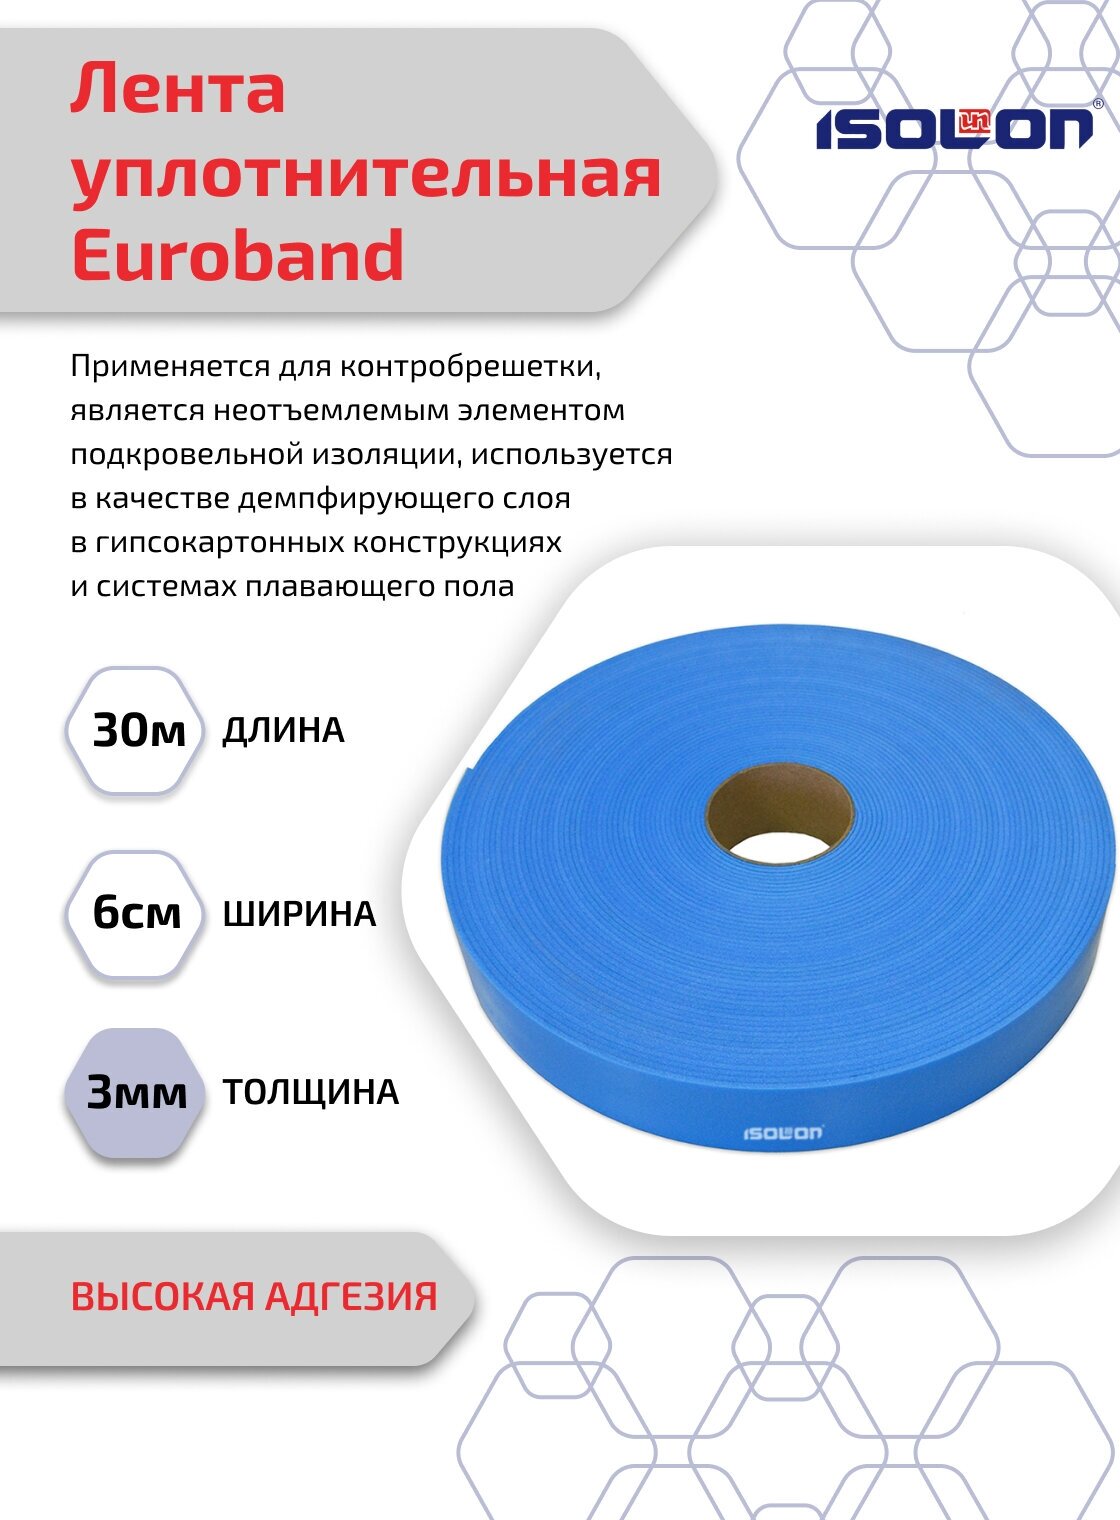 Лента уплотнительная самоклеящаяся ISOLON S tape высокая адгезия 60 мм х 30 м синий